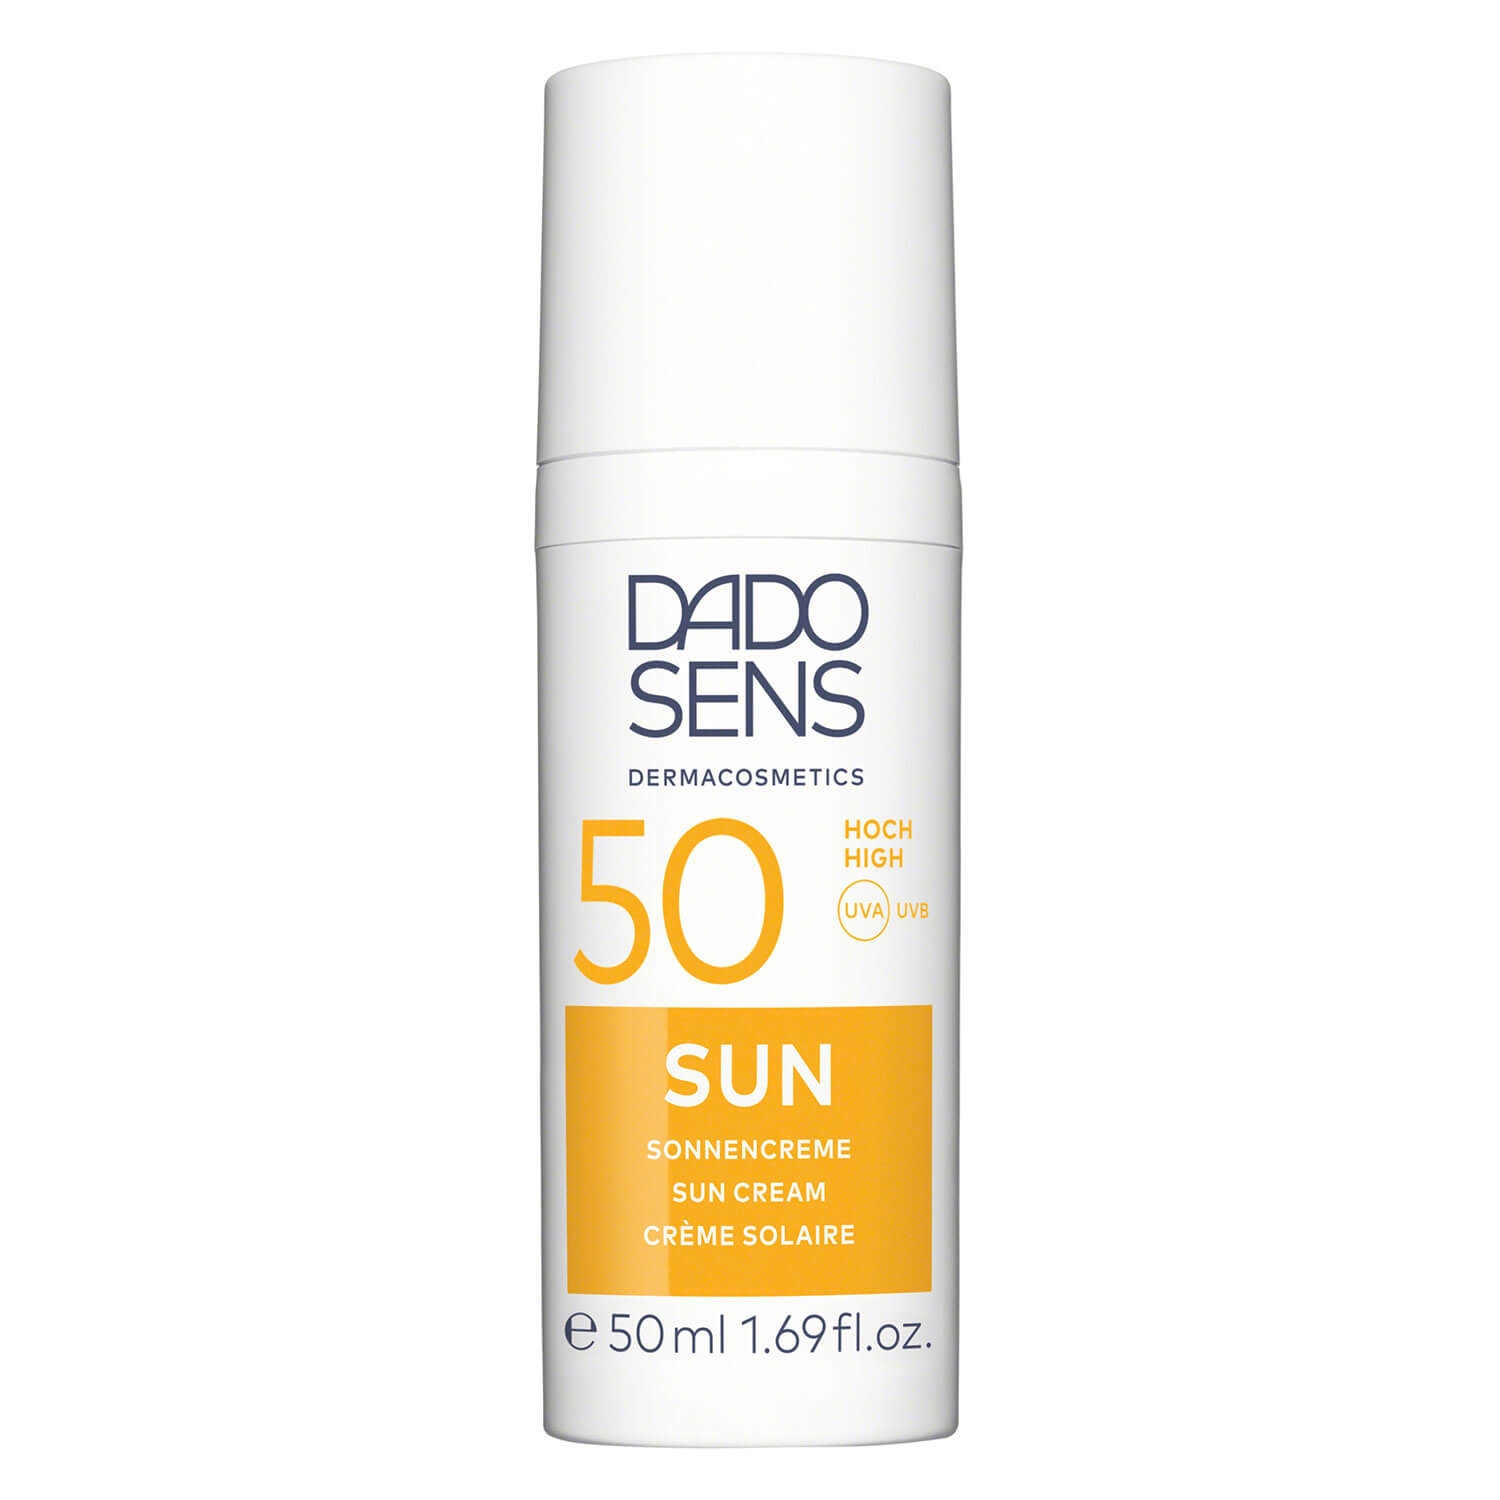 Produktbild von DADO SENS SUN - Sonnencreme SPF 50